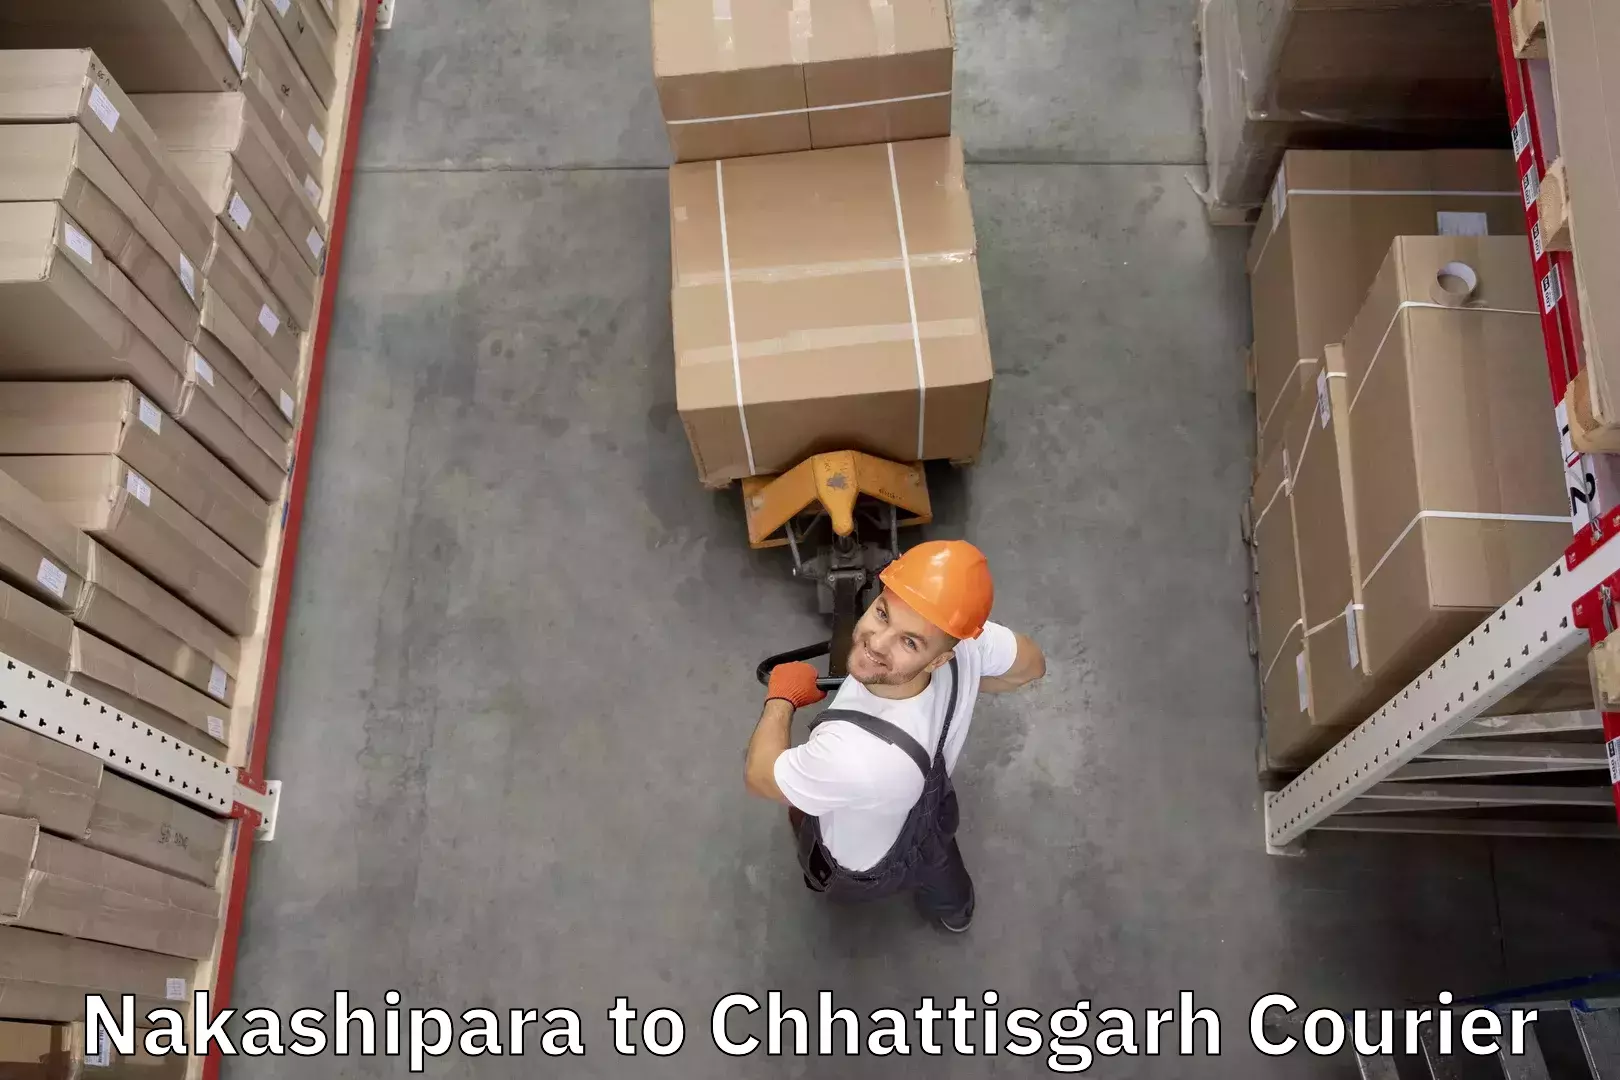 Baggage shipping service Nakashipara to Patan Durg